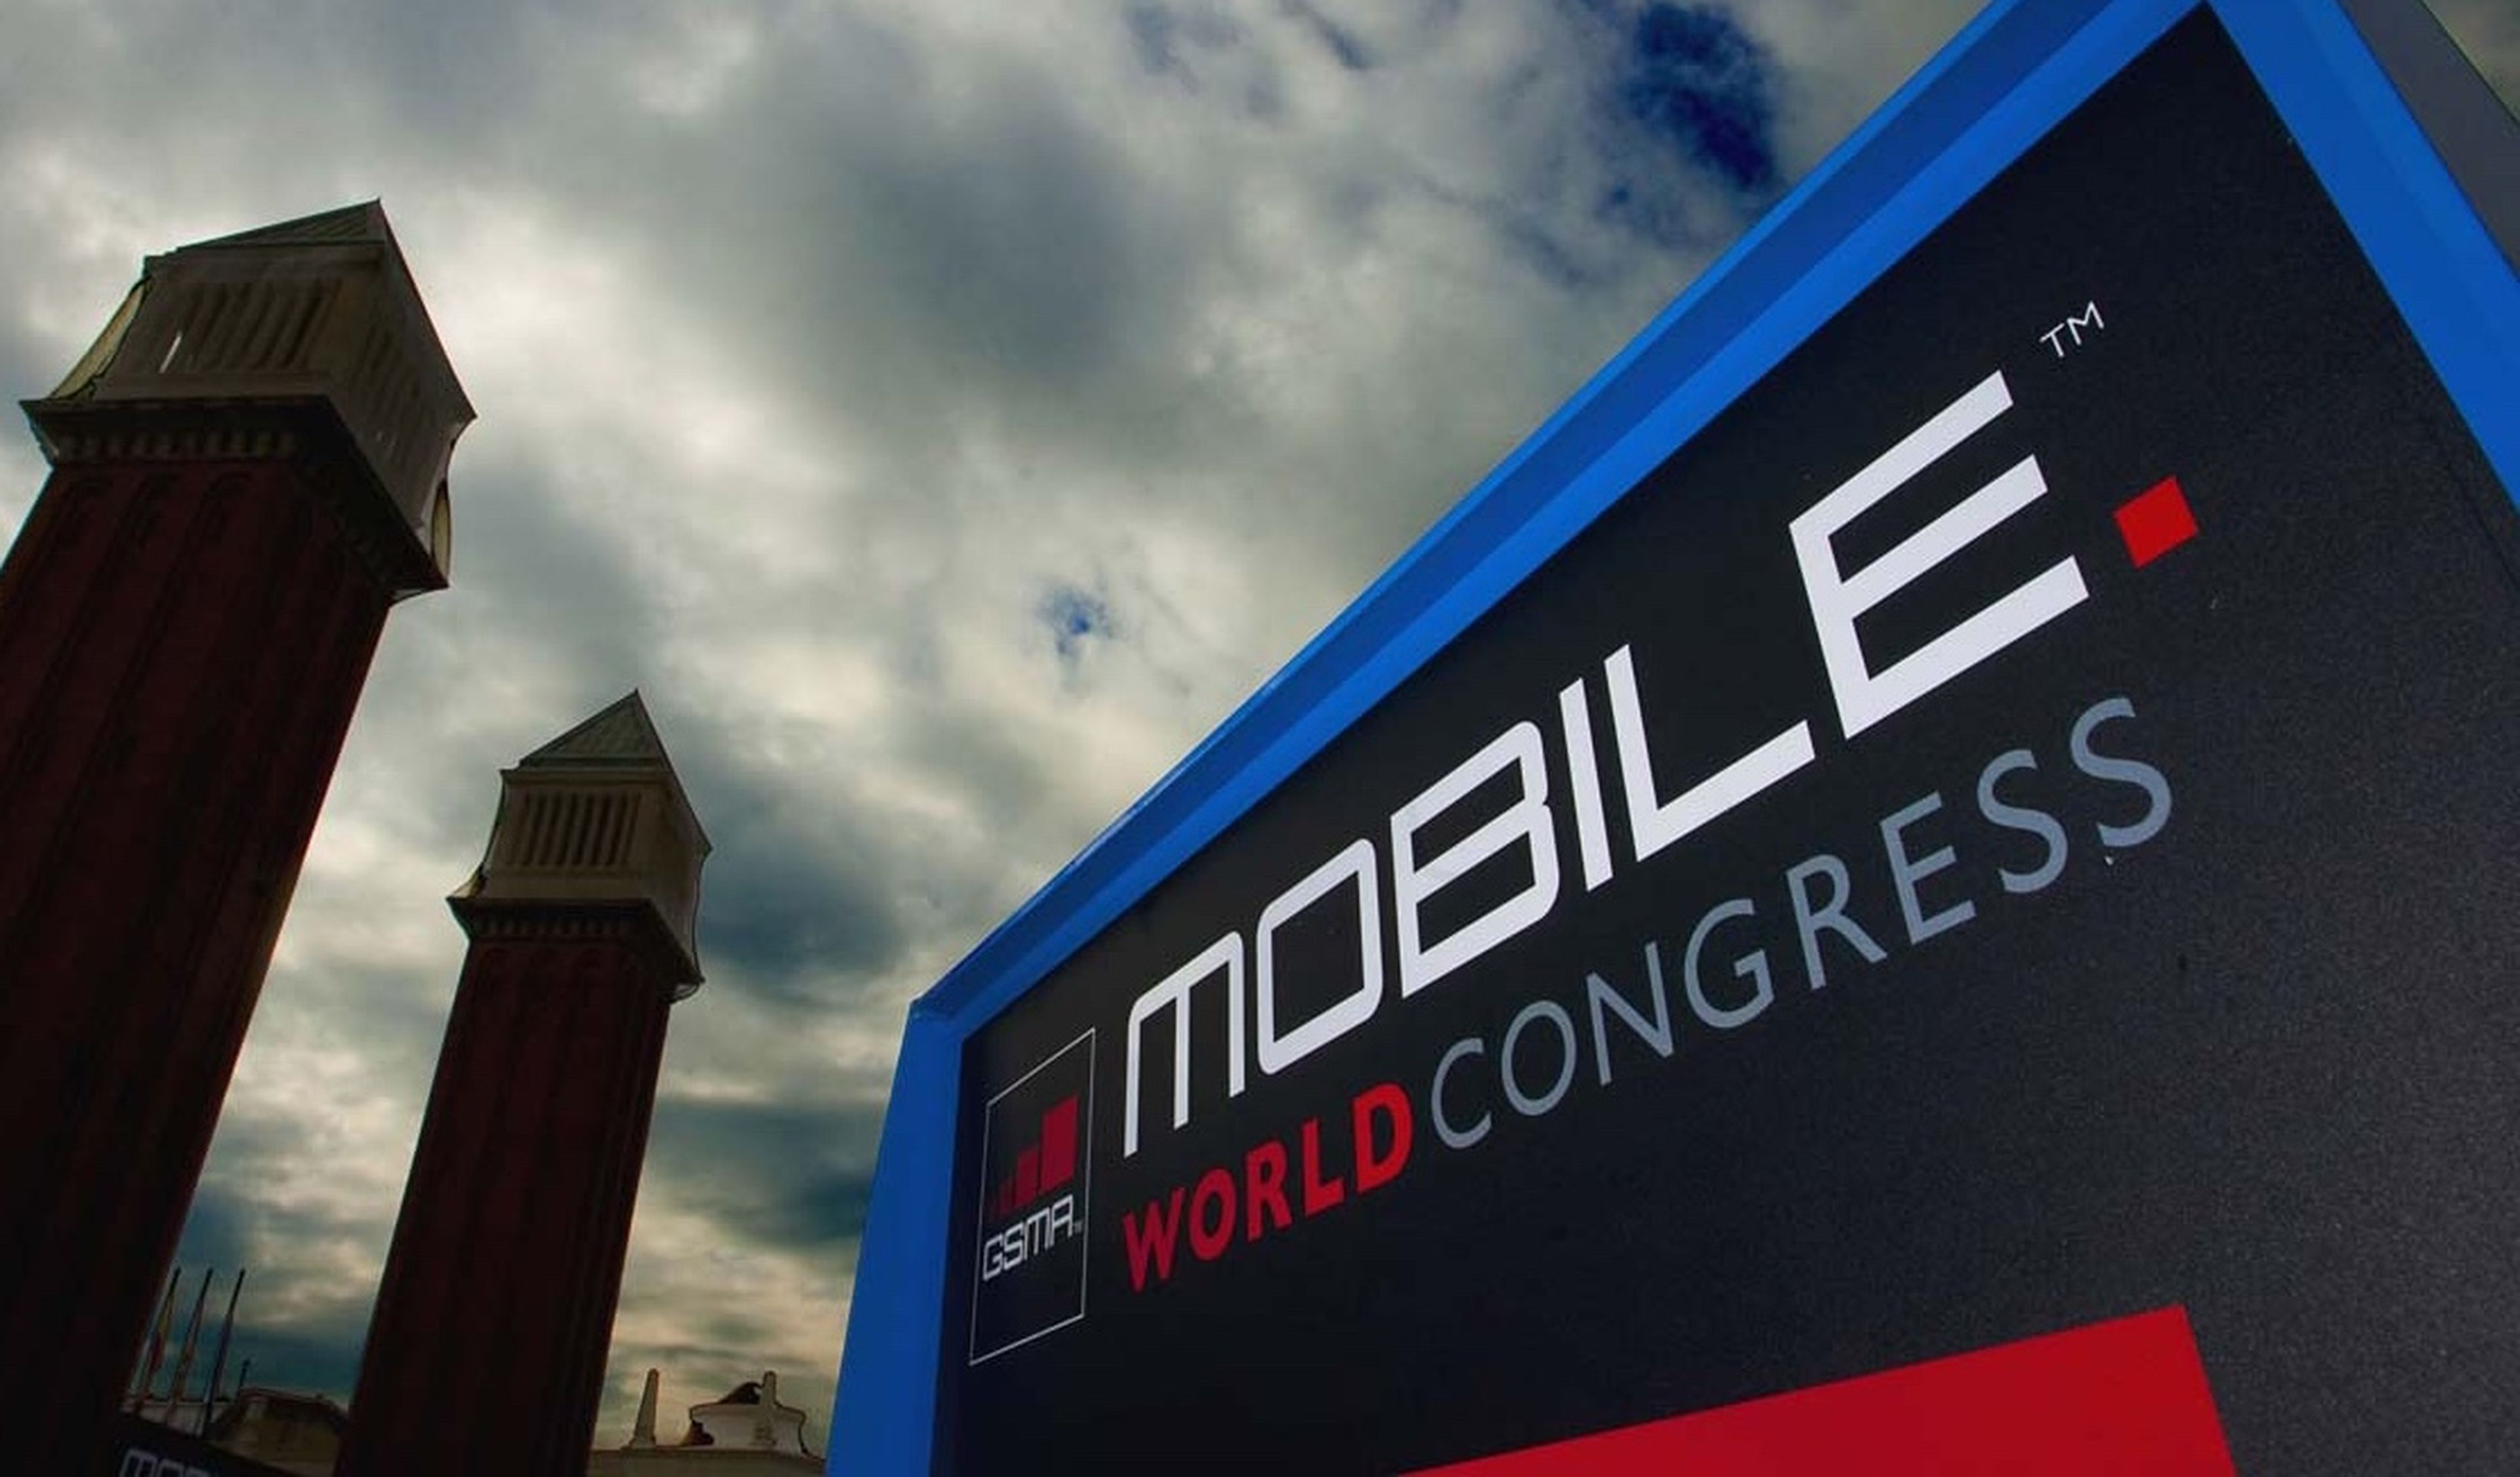 novedades mwc 2017, lanzamientos Mobile World Congress 2017, que se presentará en el Mobile World Congress 2017, Nokia 3310 MWC, LG G6 MWC, novedades en el MWC